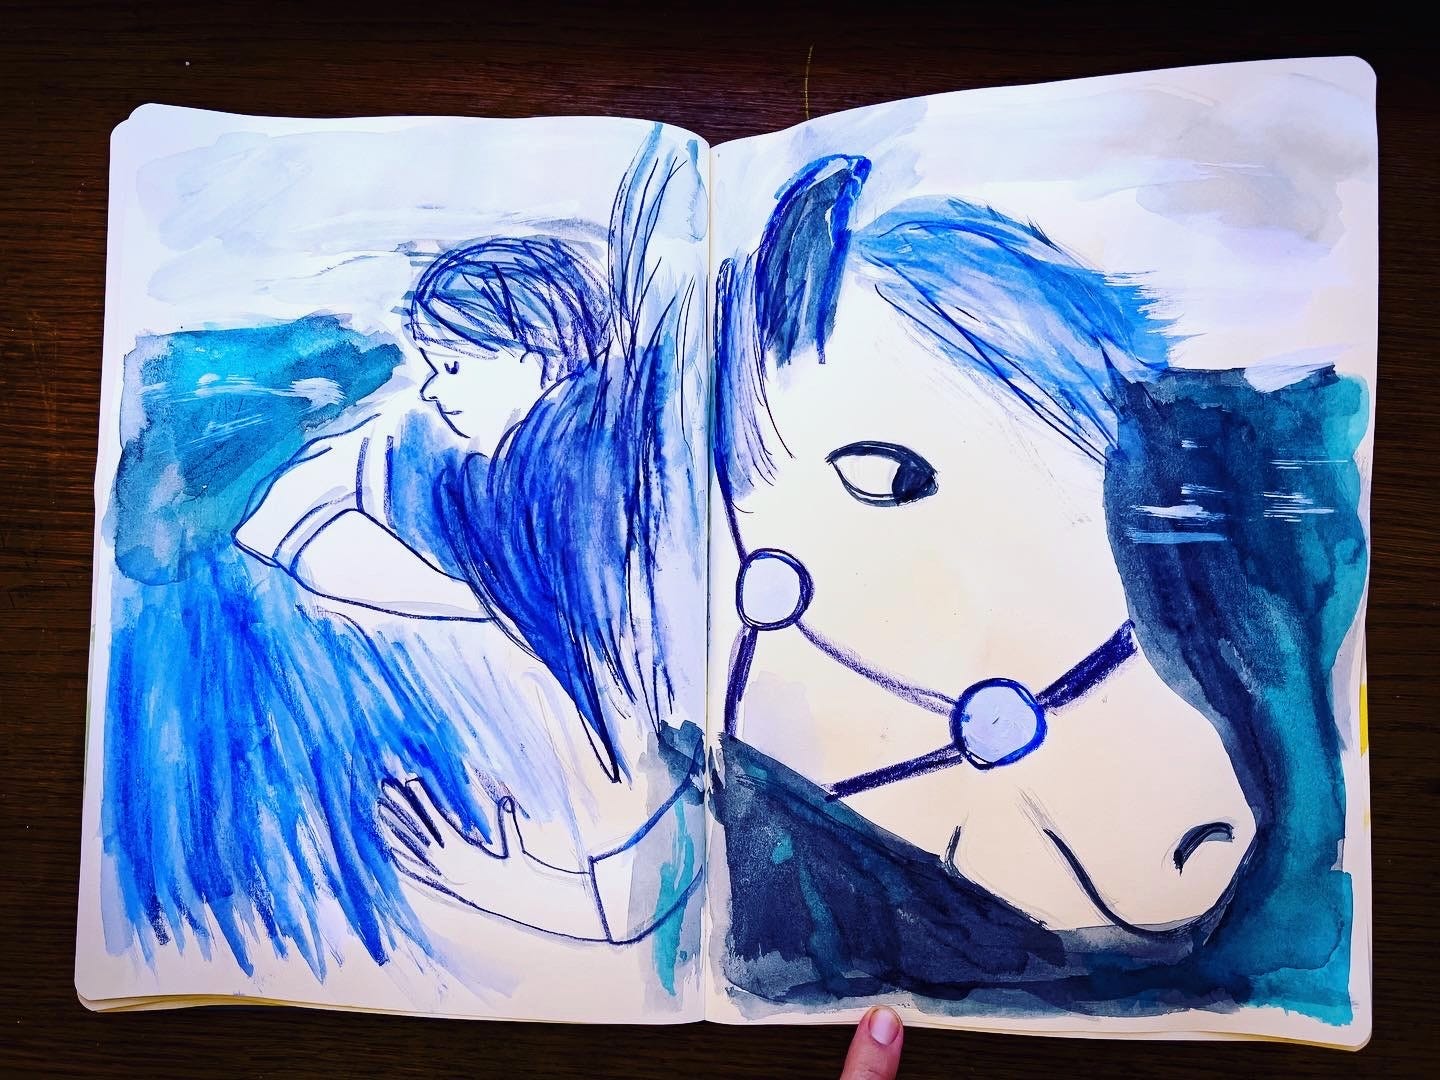 sketchbook illustration of a horse by Beth Spencer